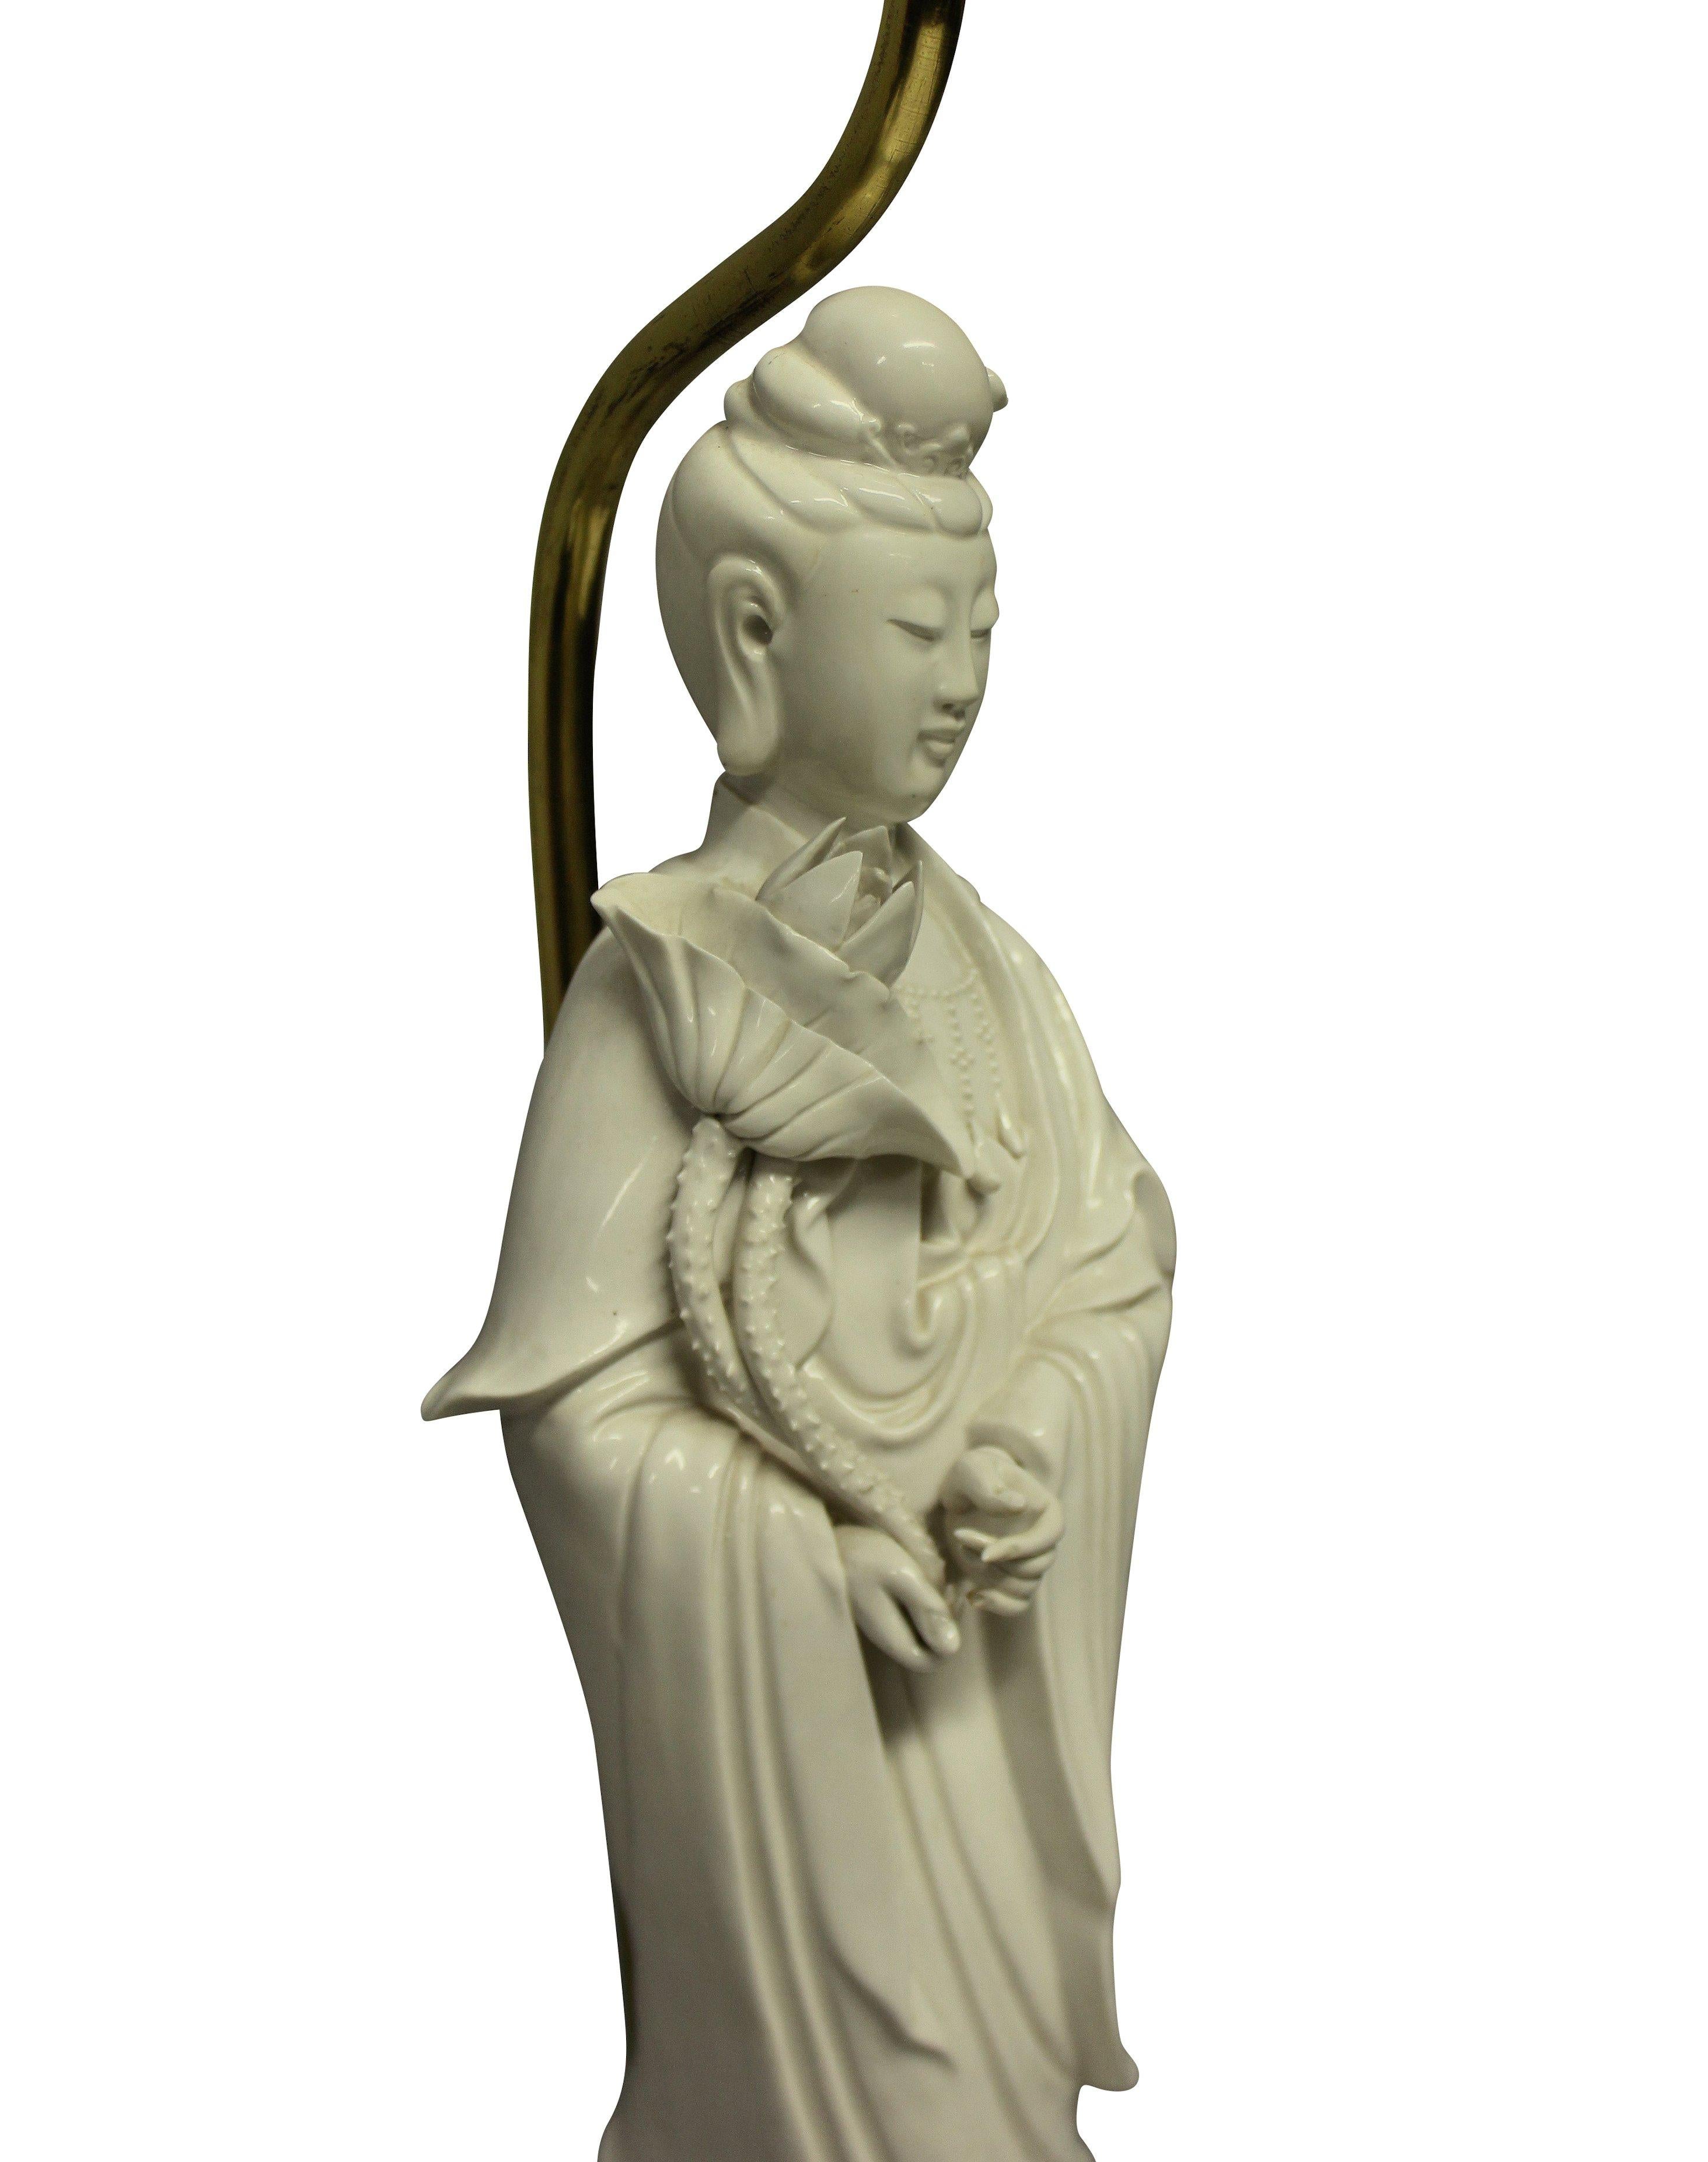 Une fine lampe de table en porcelaine blanche de Chine de style oriental. Représentation d'une dame chinoise debout sur une base dorée à l'eau.